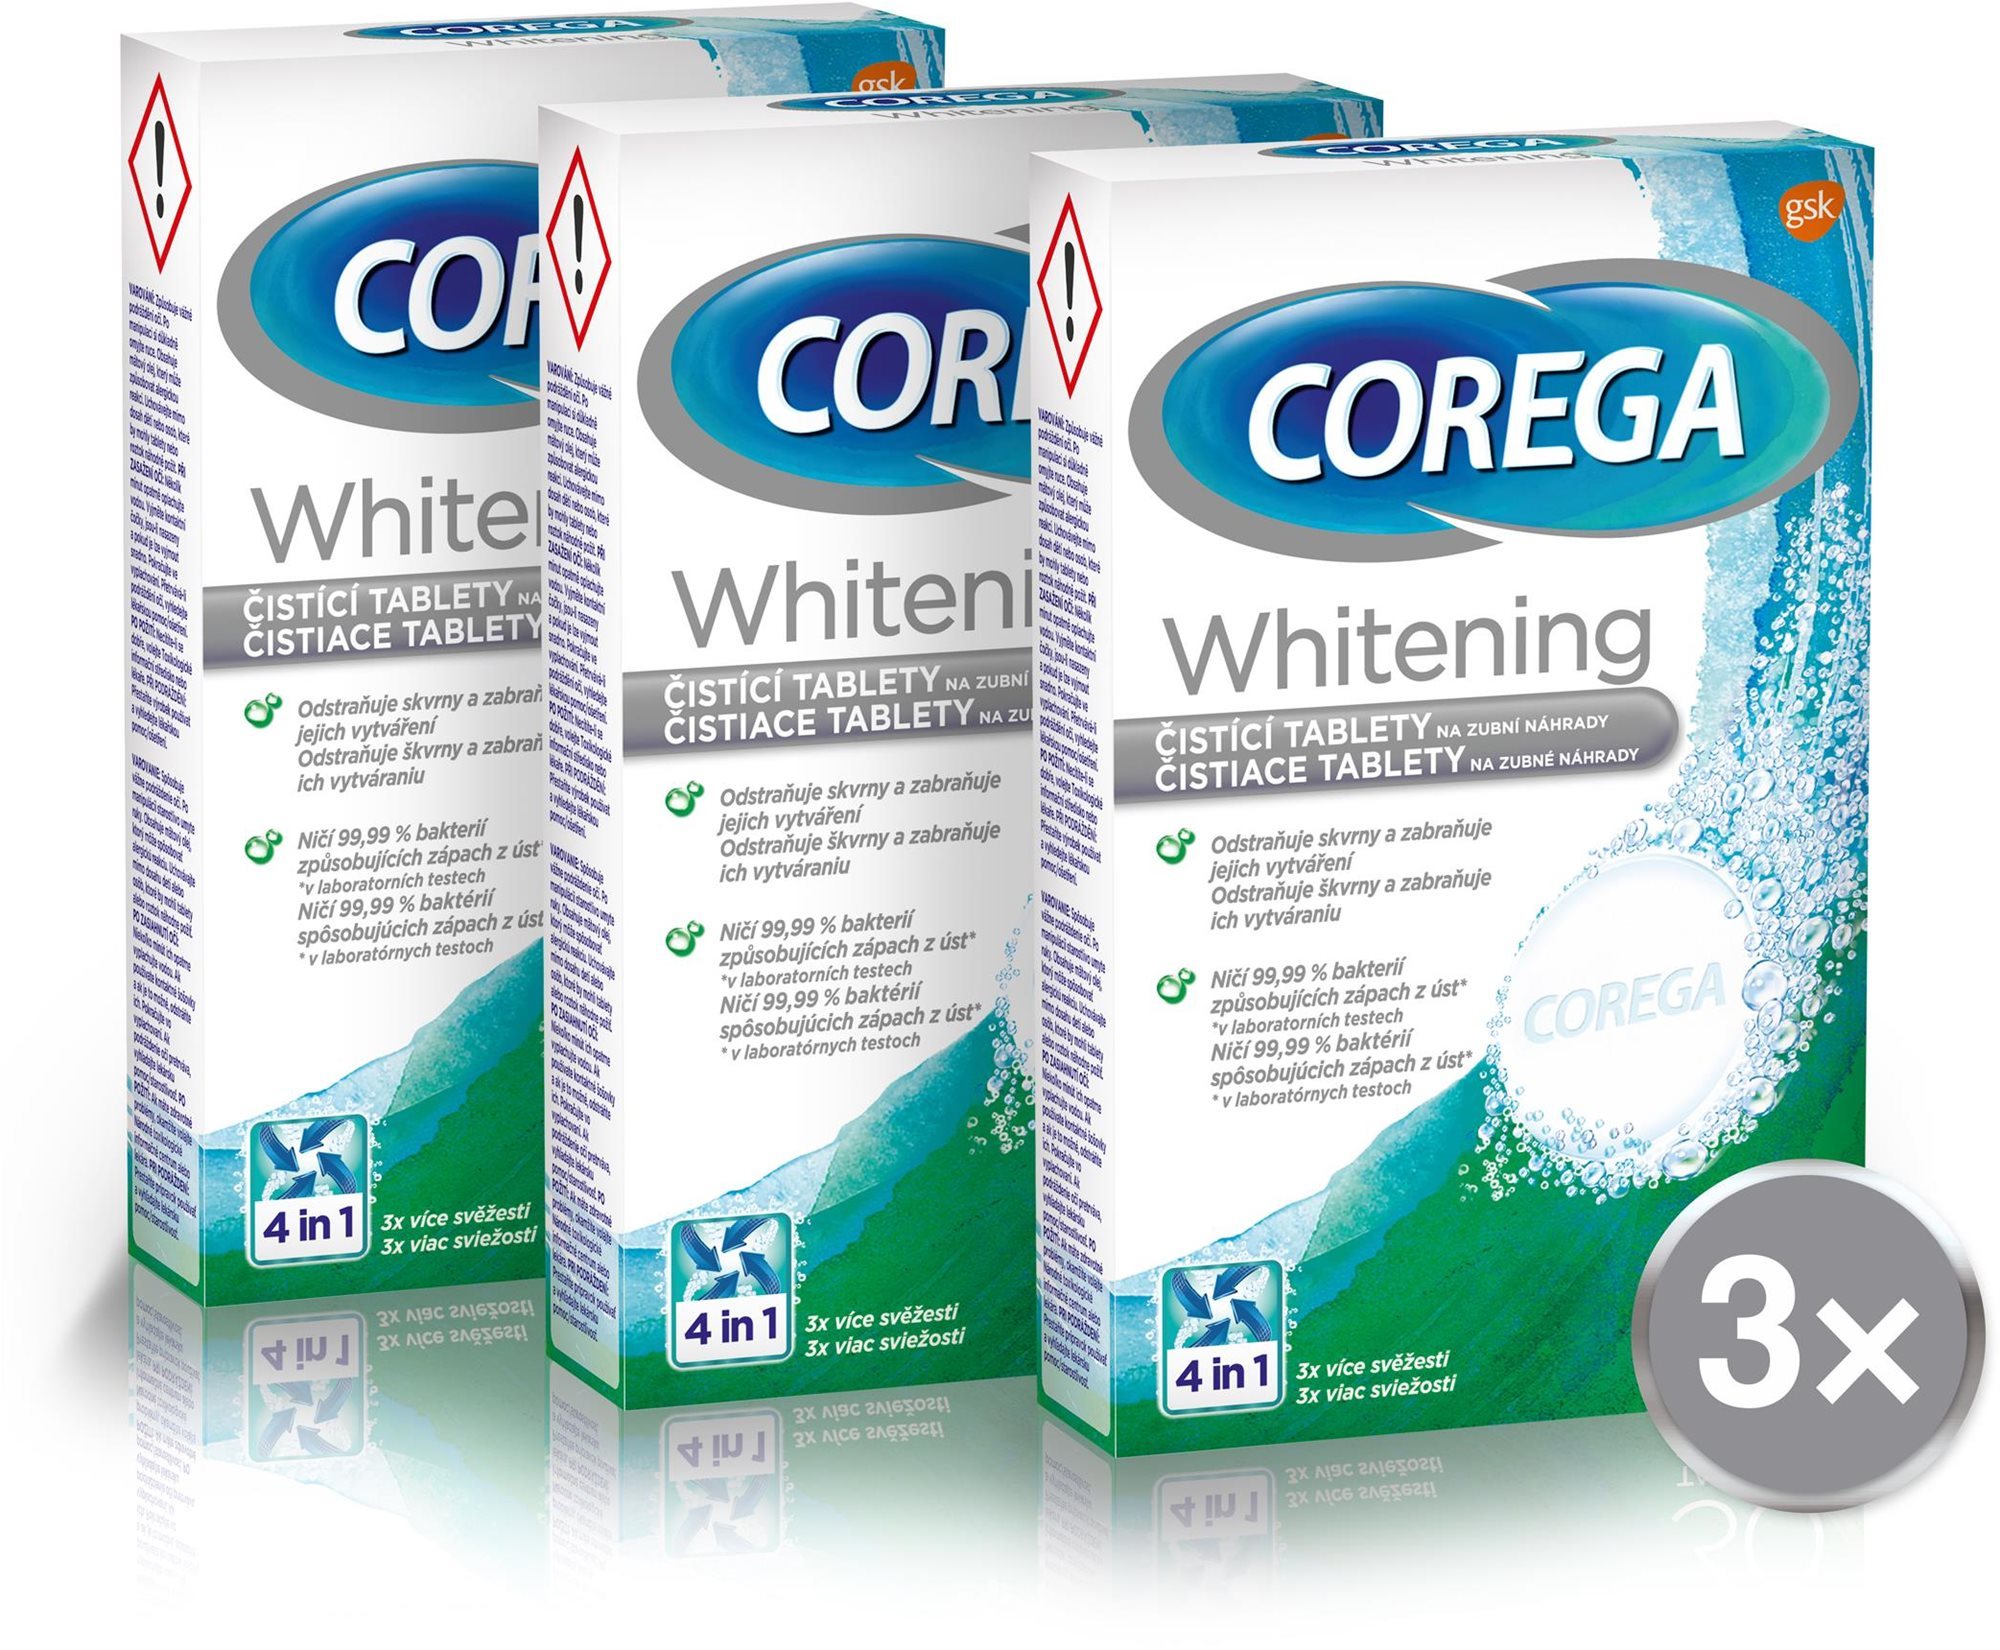 Műfogsortisztító tabletta COREGA Whitening Pro műfogsortisztító 3 × 30 darab